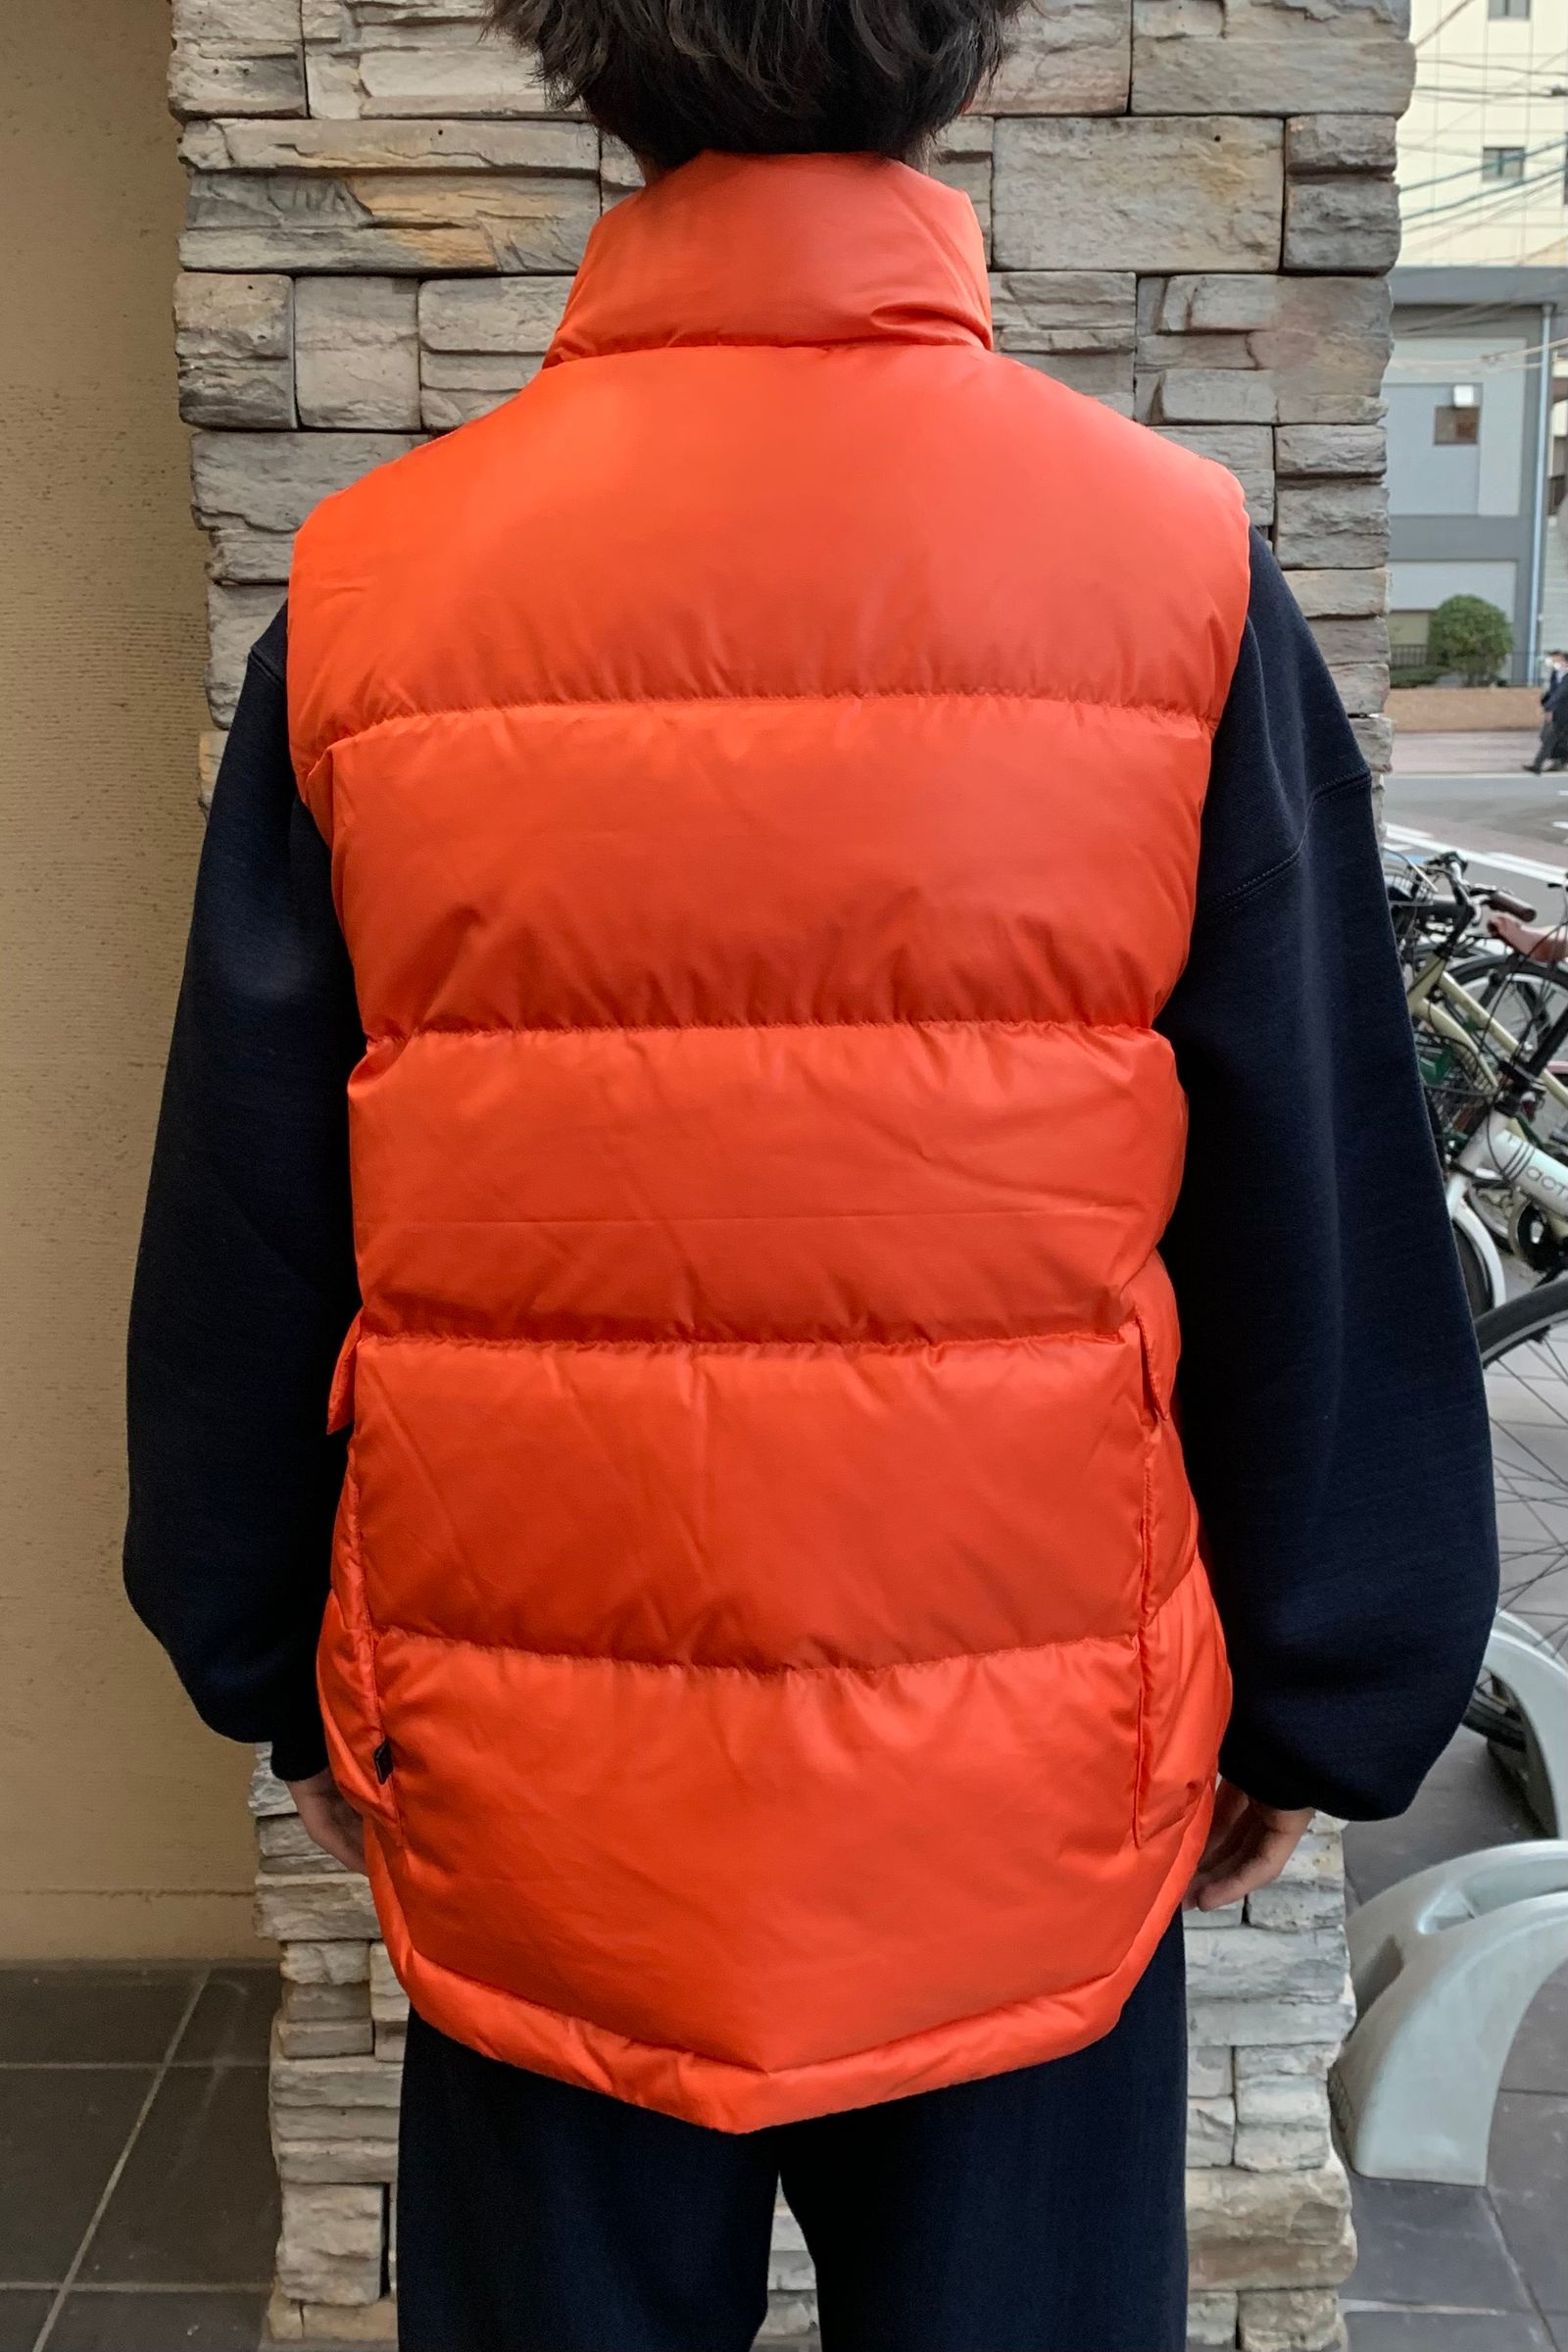 DAIWA PIER 39 ダウンベスト S オレンジ orange ダイワ 5-